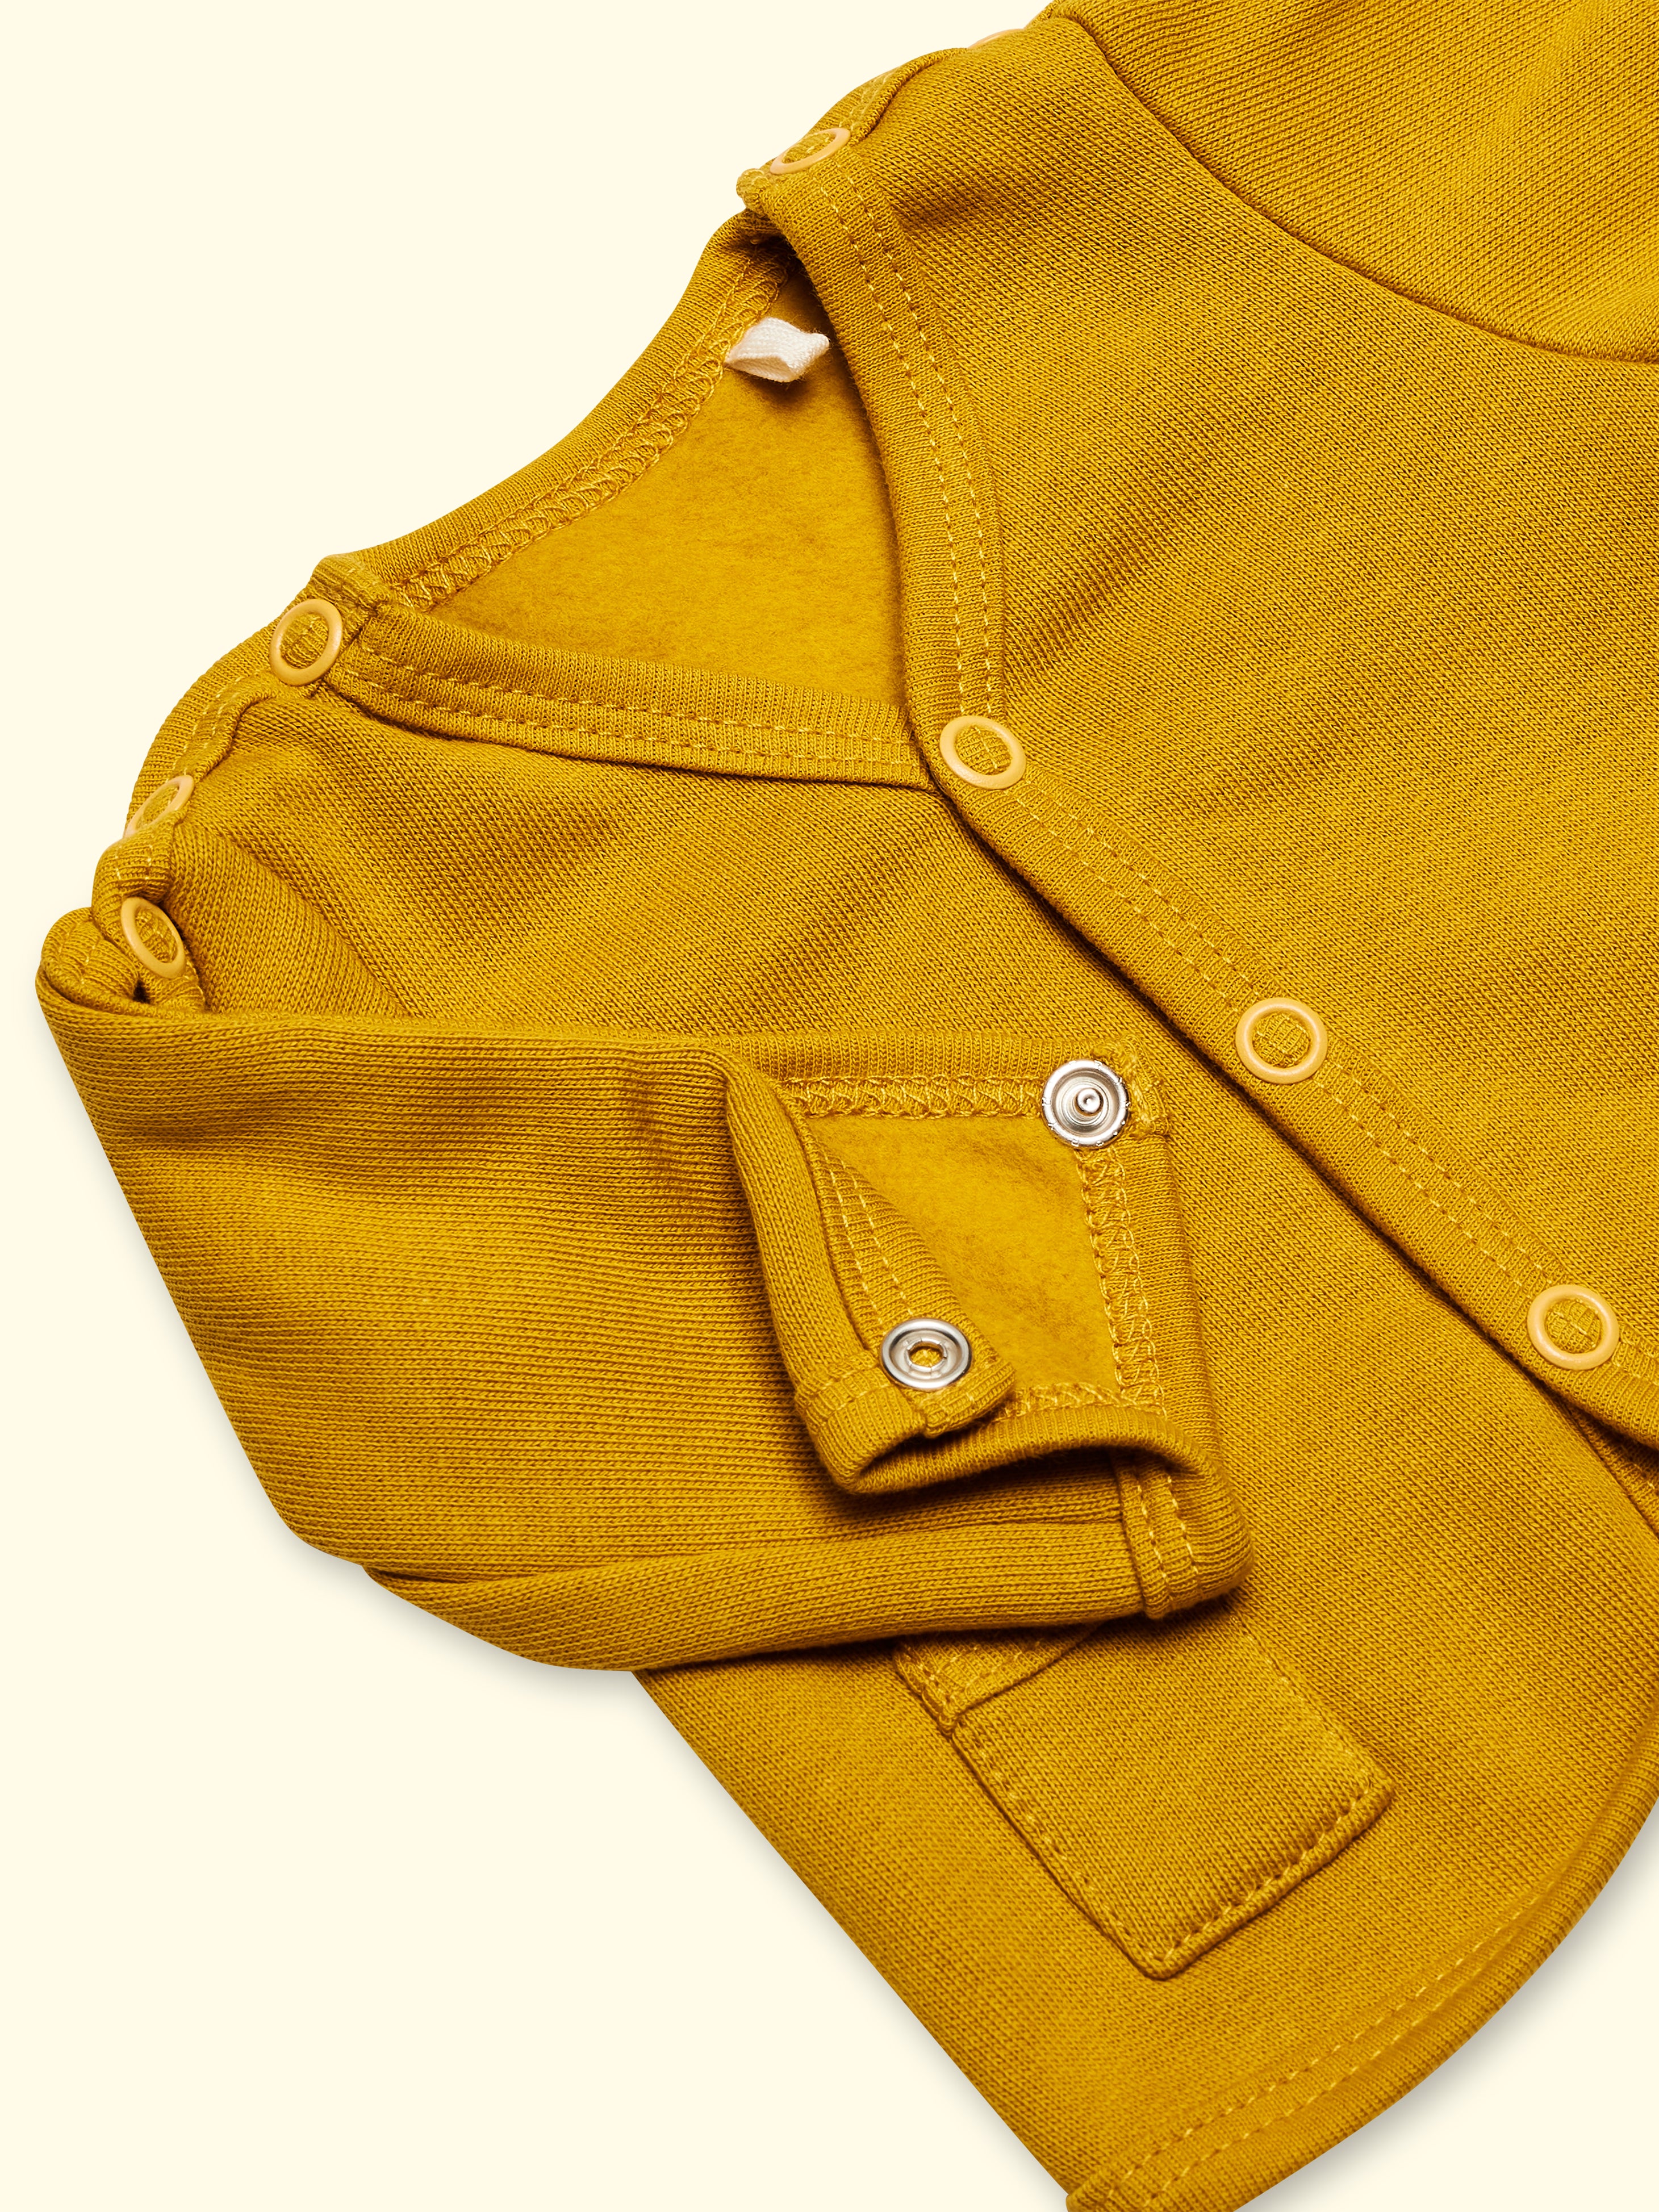 Adaptive jacket made of sweat fabric - mustard yellow